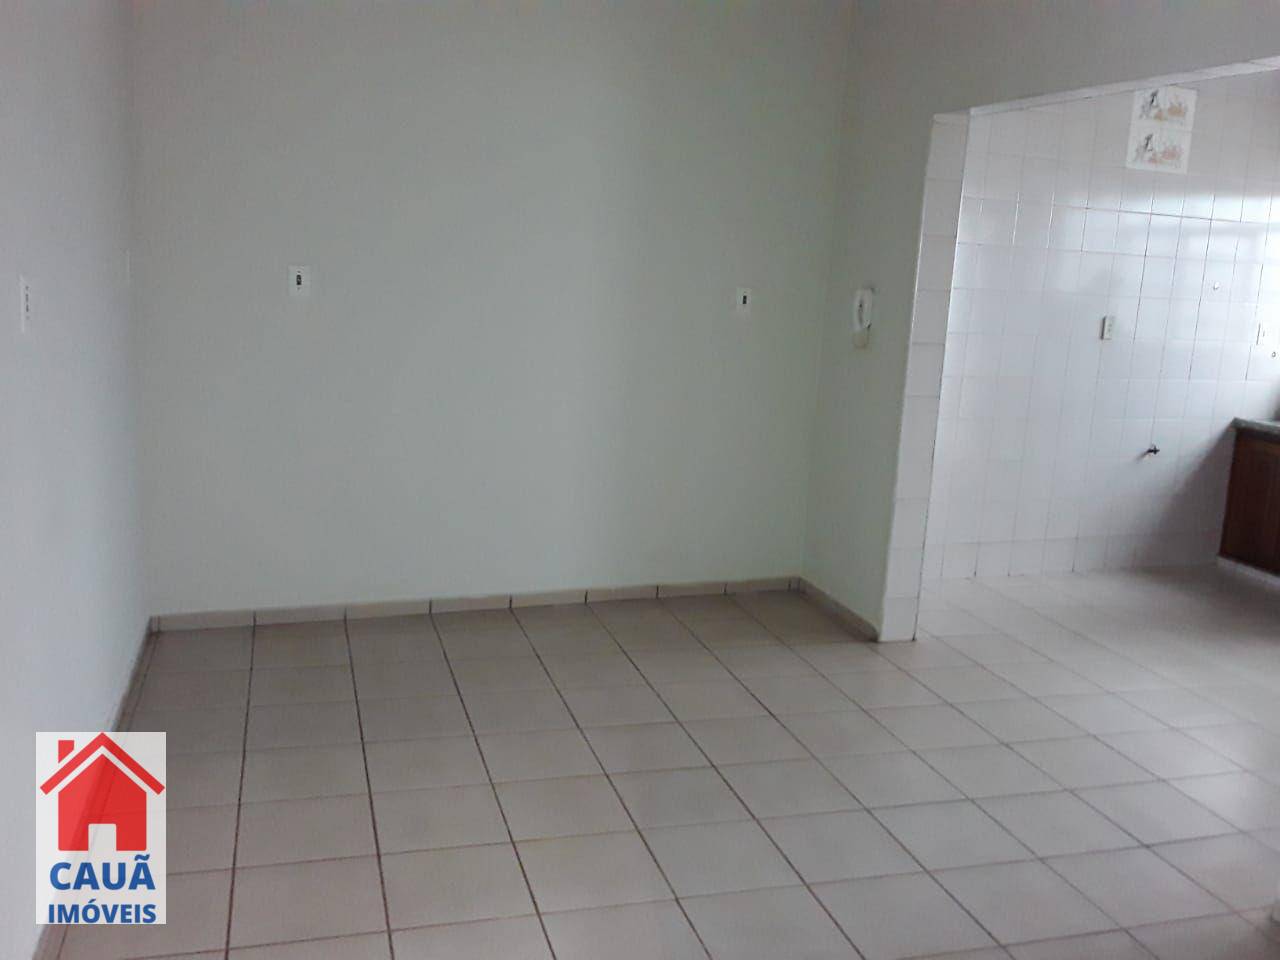 Apartamento, 3 quartos, 124 m² - Foto 1